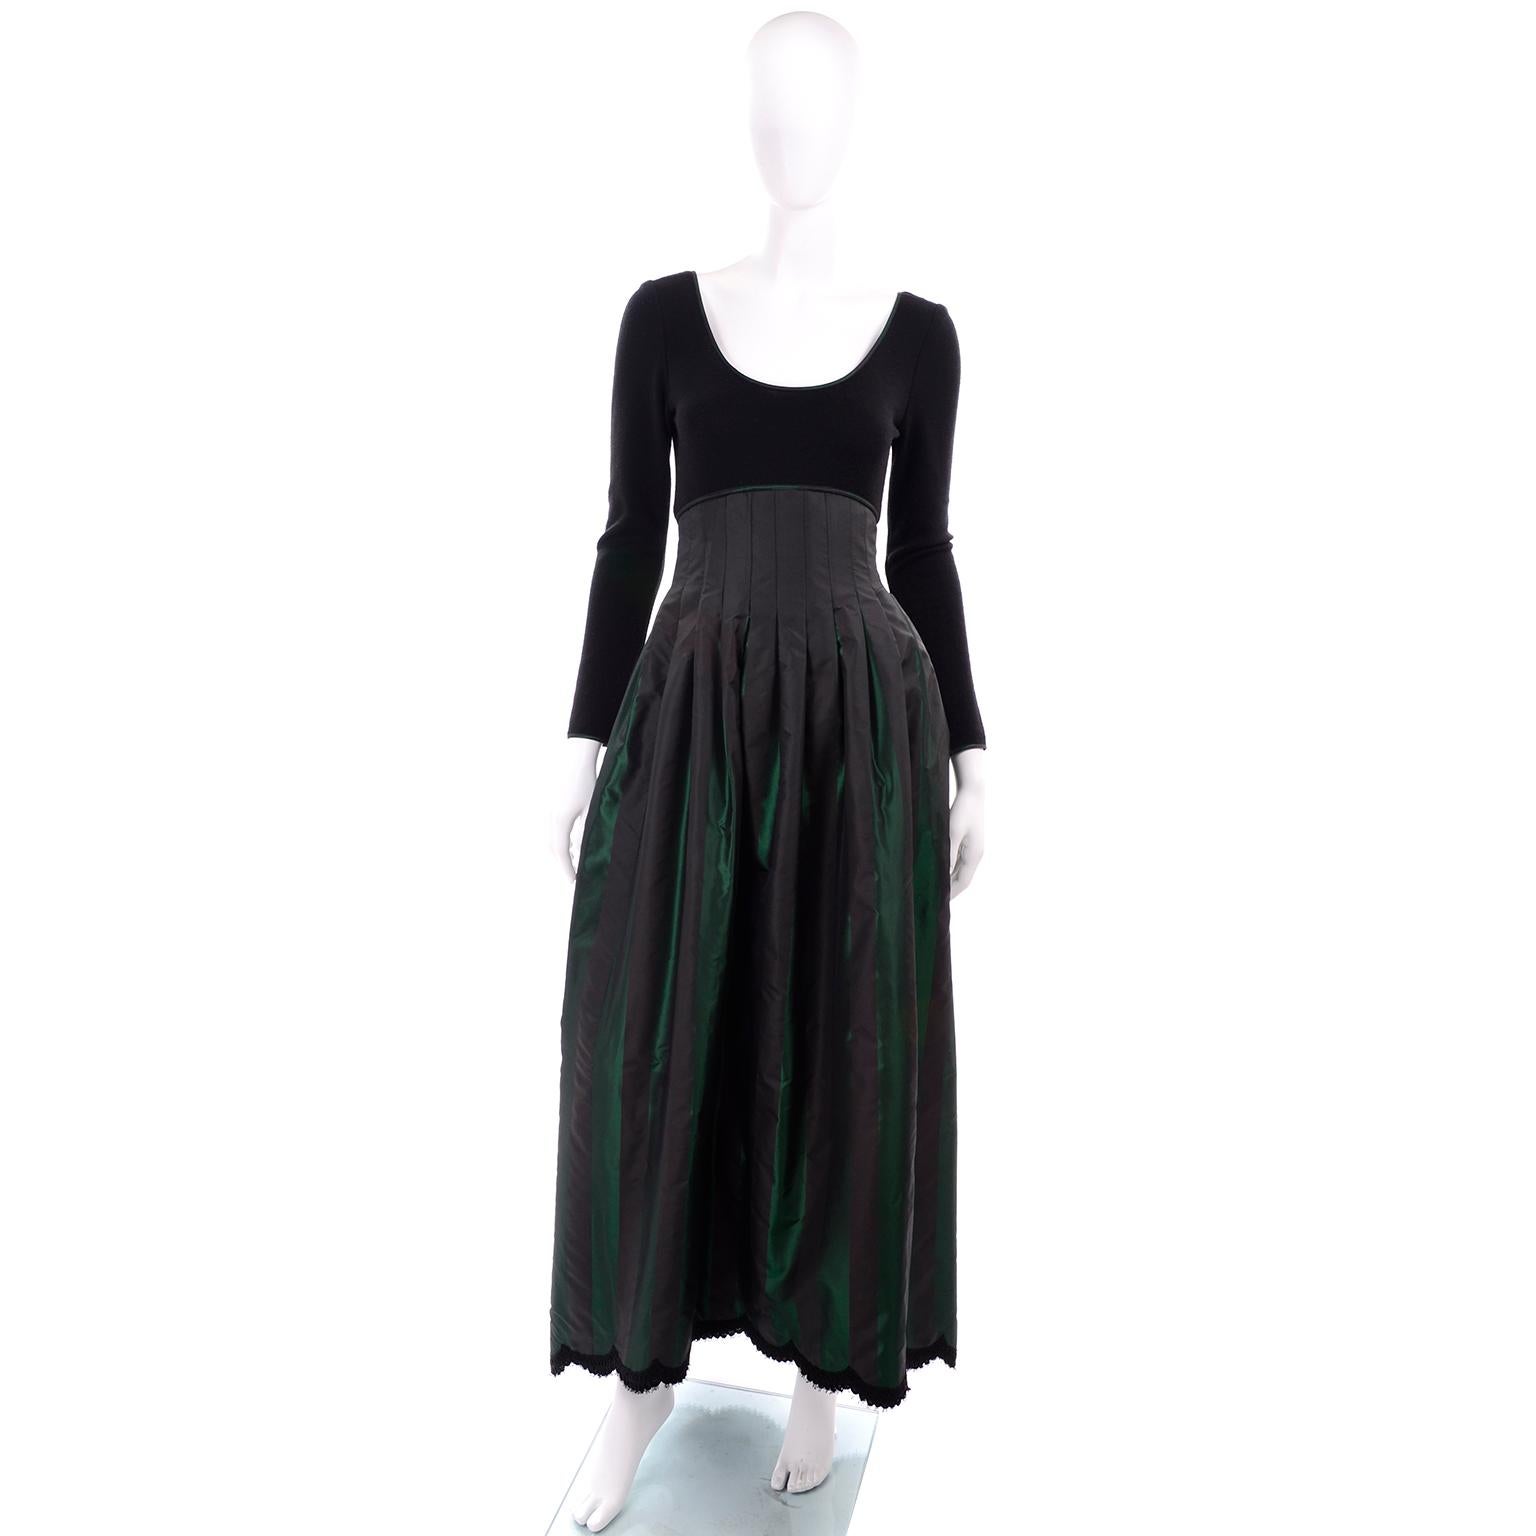 Voici une superbe robe de soirée Geoffrey By Vintage des années 1980, avec un corsage en maille de laine noire et une longue jupe à taille ultra haute en taffetas plissé irisé rayé noir et vert, avec une bordure en dentelle à l'ourlet. Cette robe